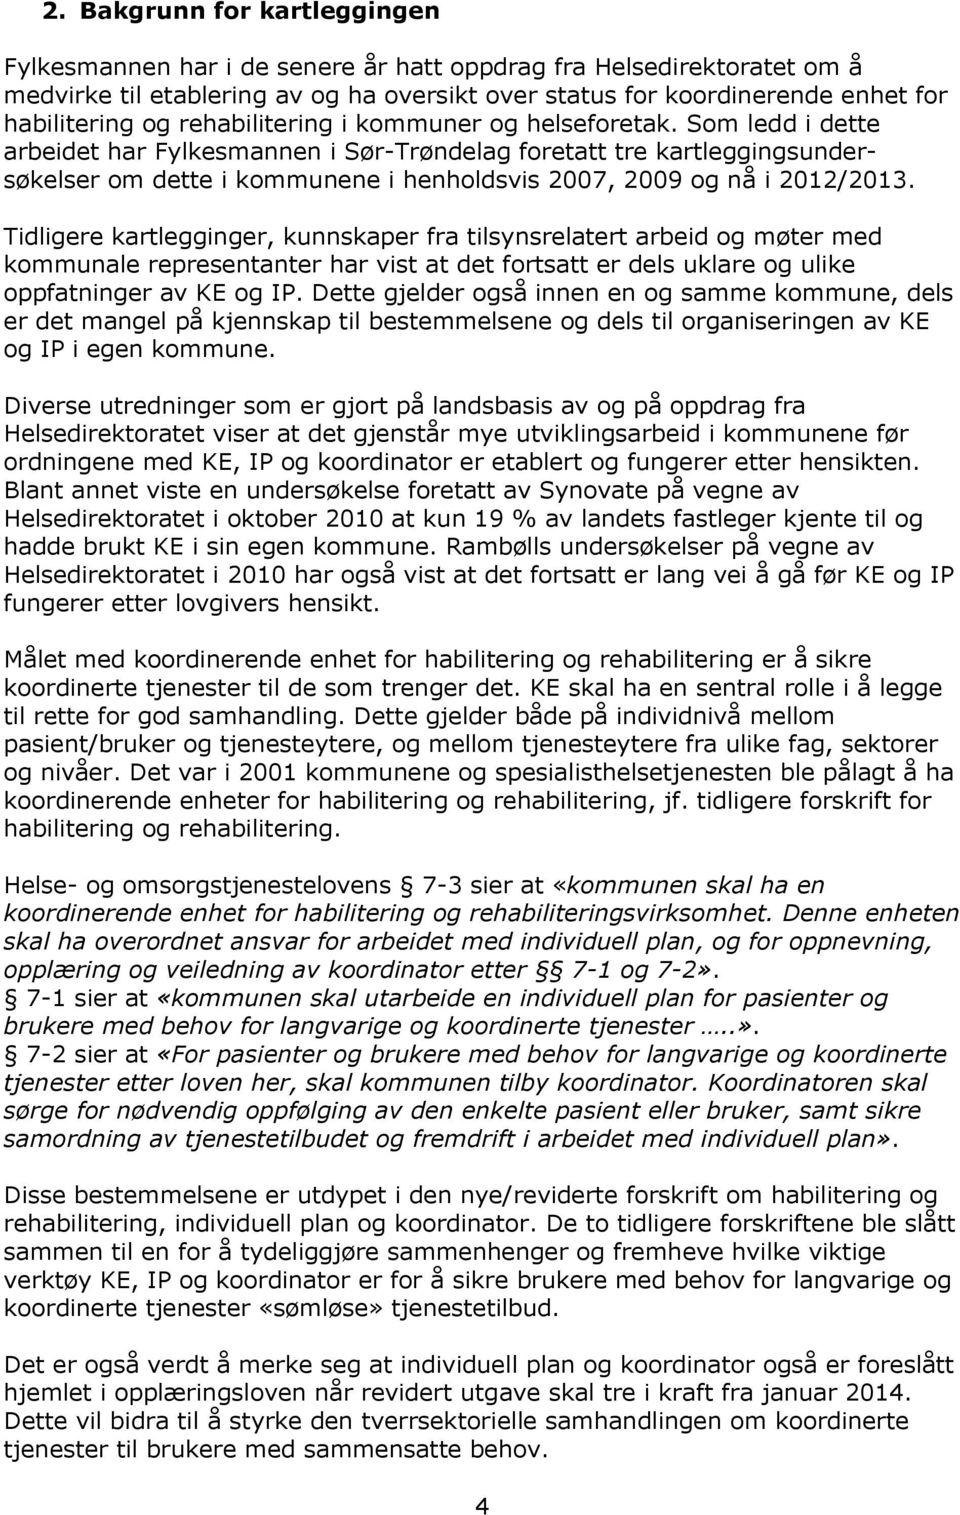 Som ledd i dette arbeidet har Fylkesmannen i Sør-Trøndelag foretatt tre kartleggingsundersøkelser om dette i kommunene i henholdsvis 2007, 2009 og nå i 2012/2013.